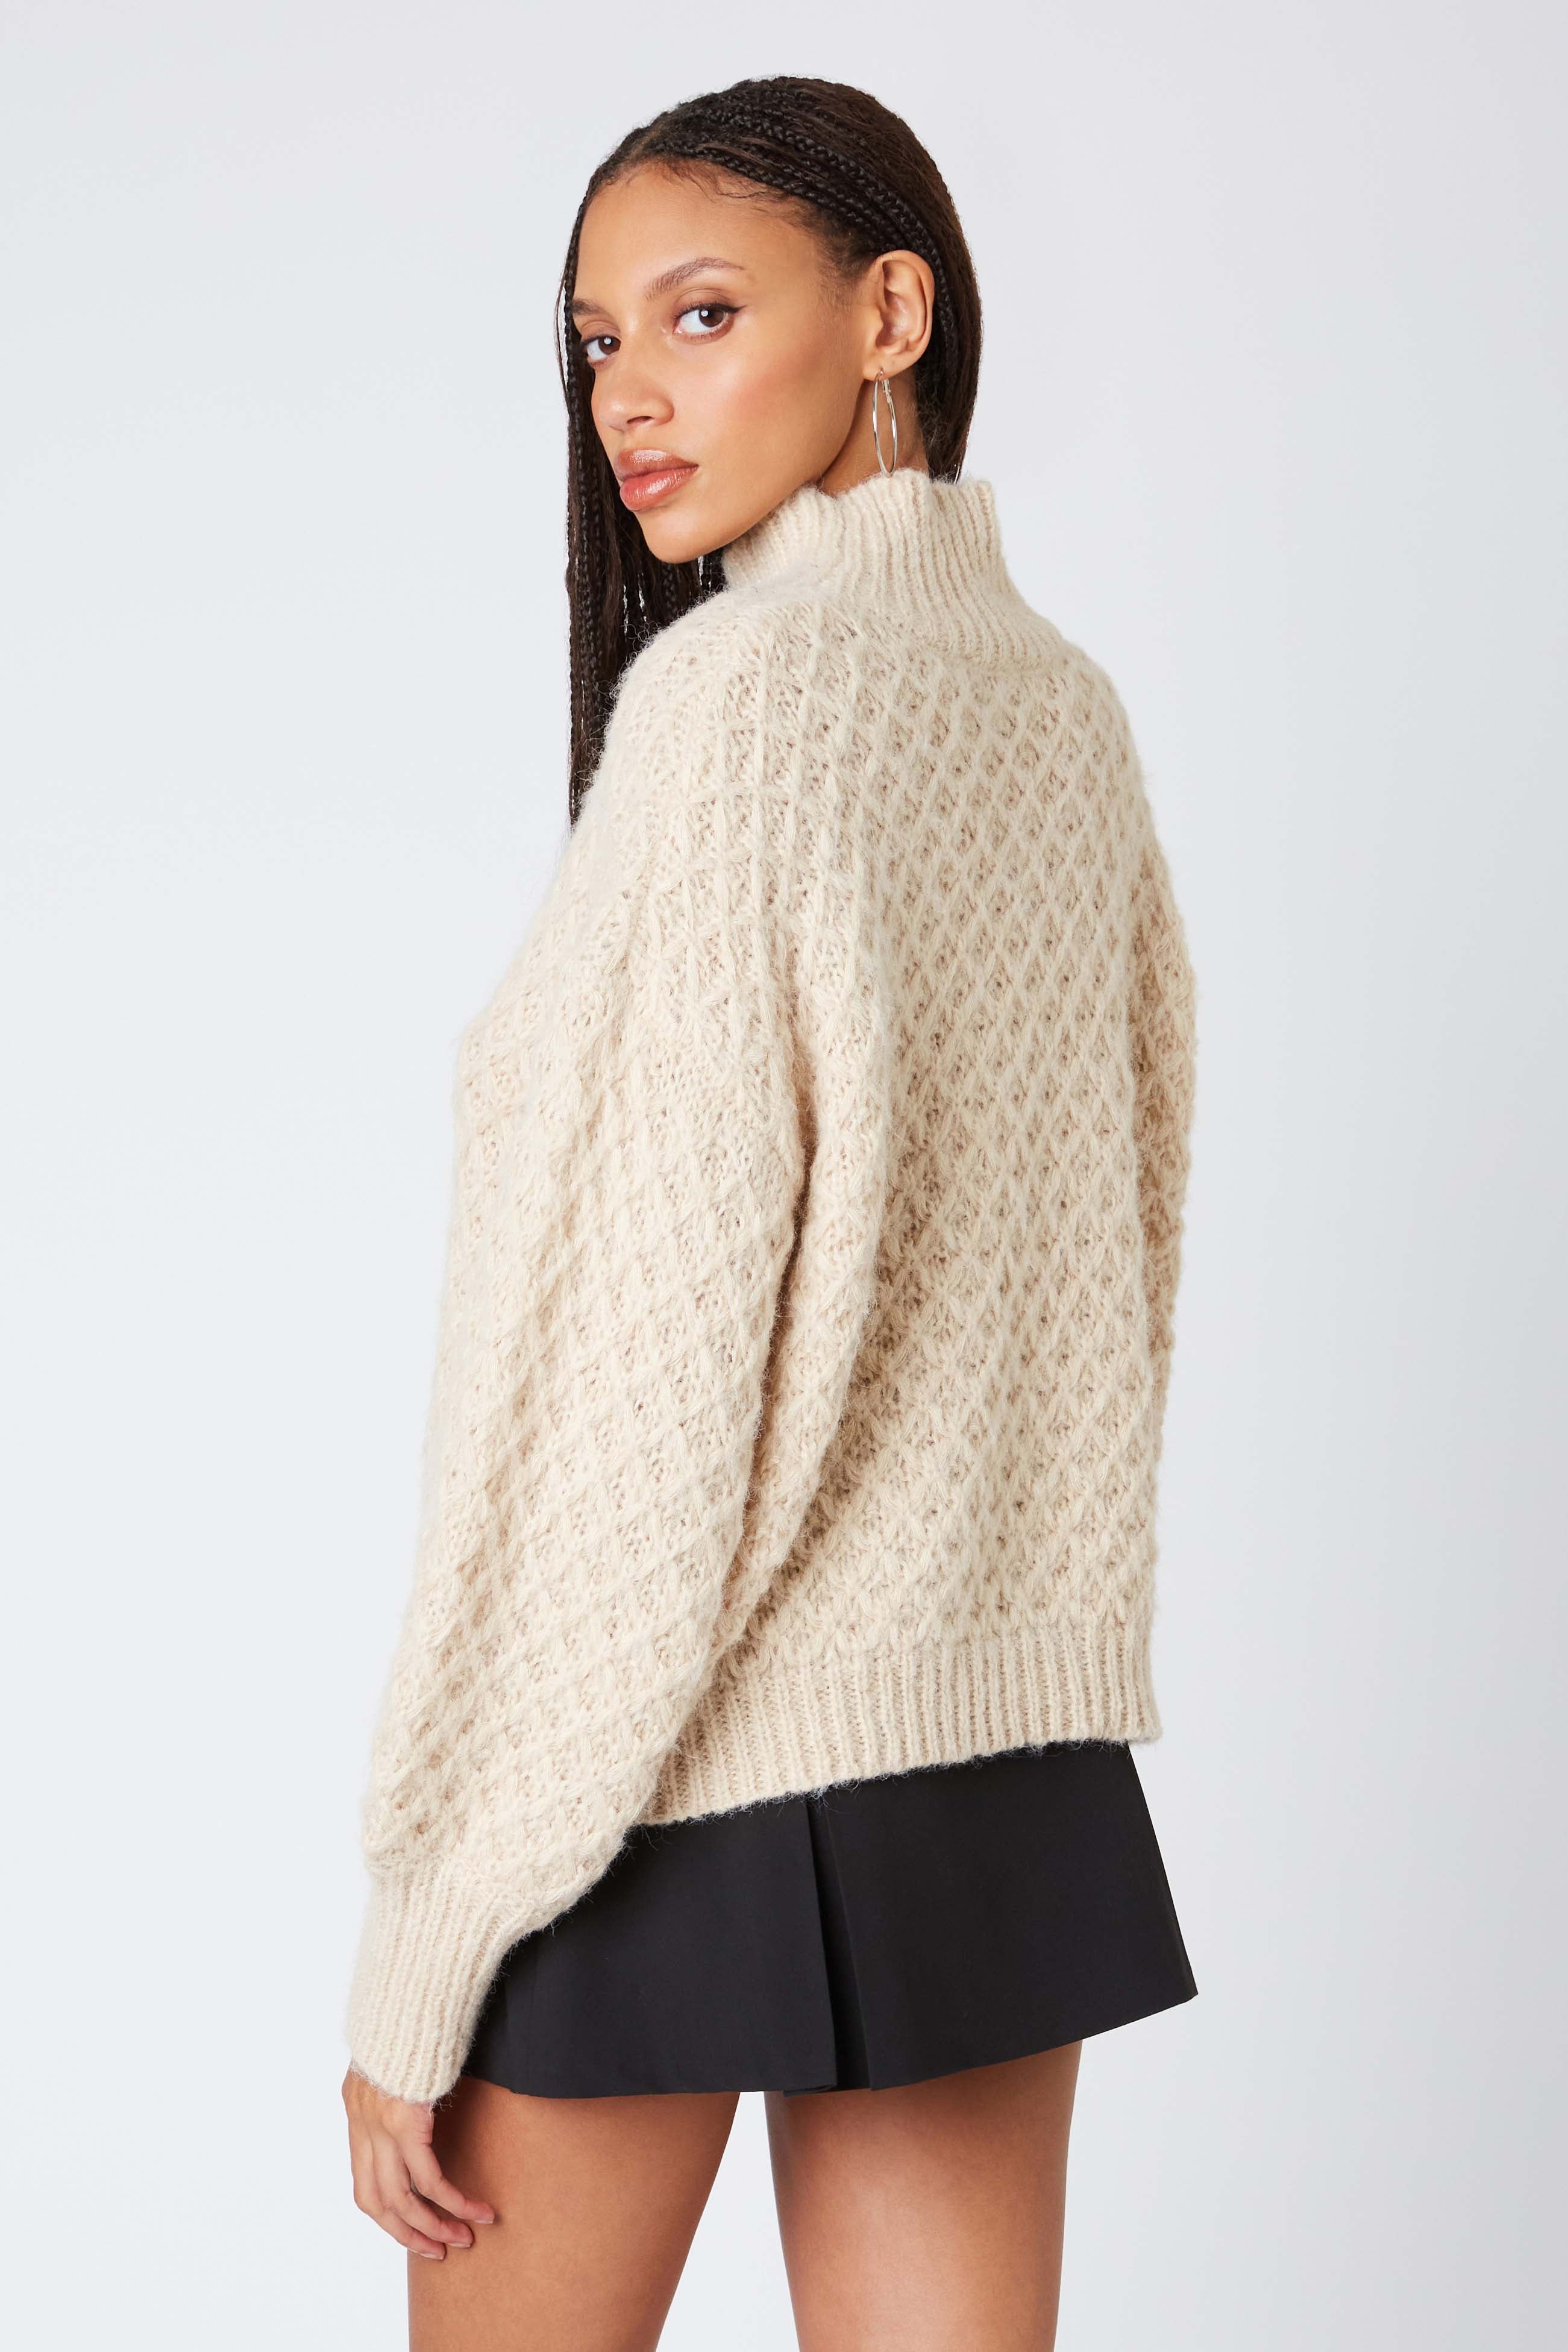 Knit Mockneck Sweater in Ecru Back View